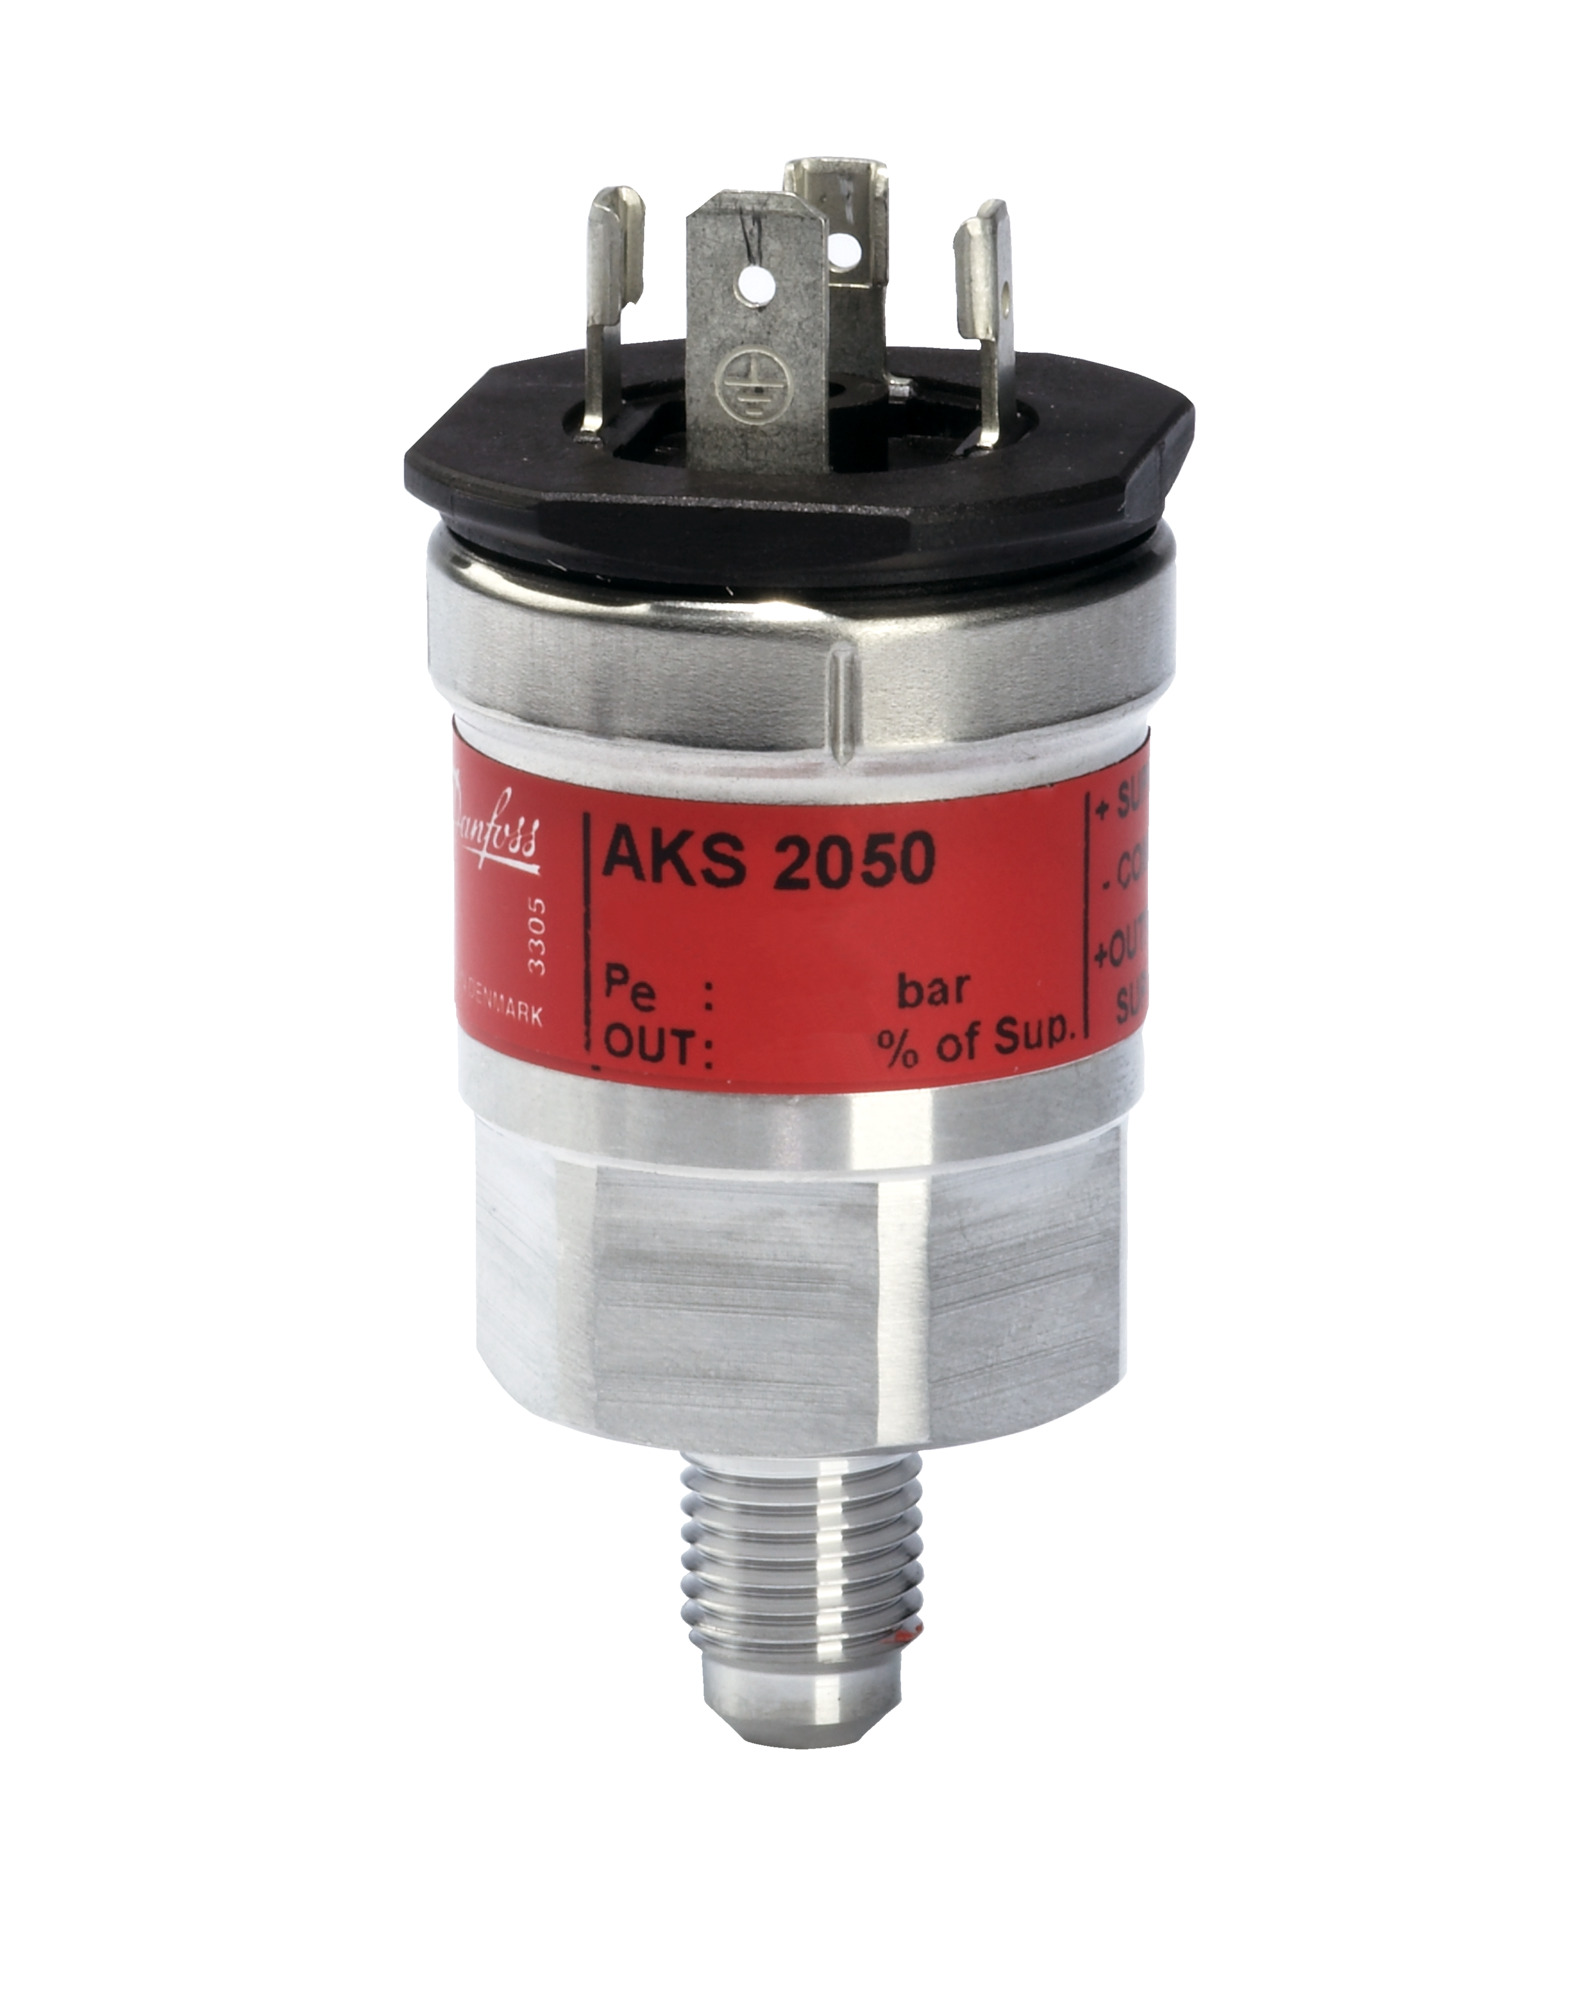 Pressure transmitter AKS 2050